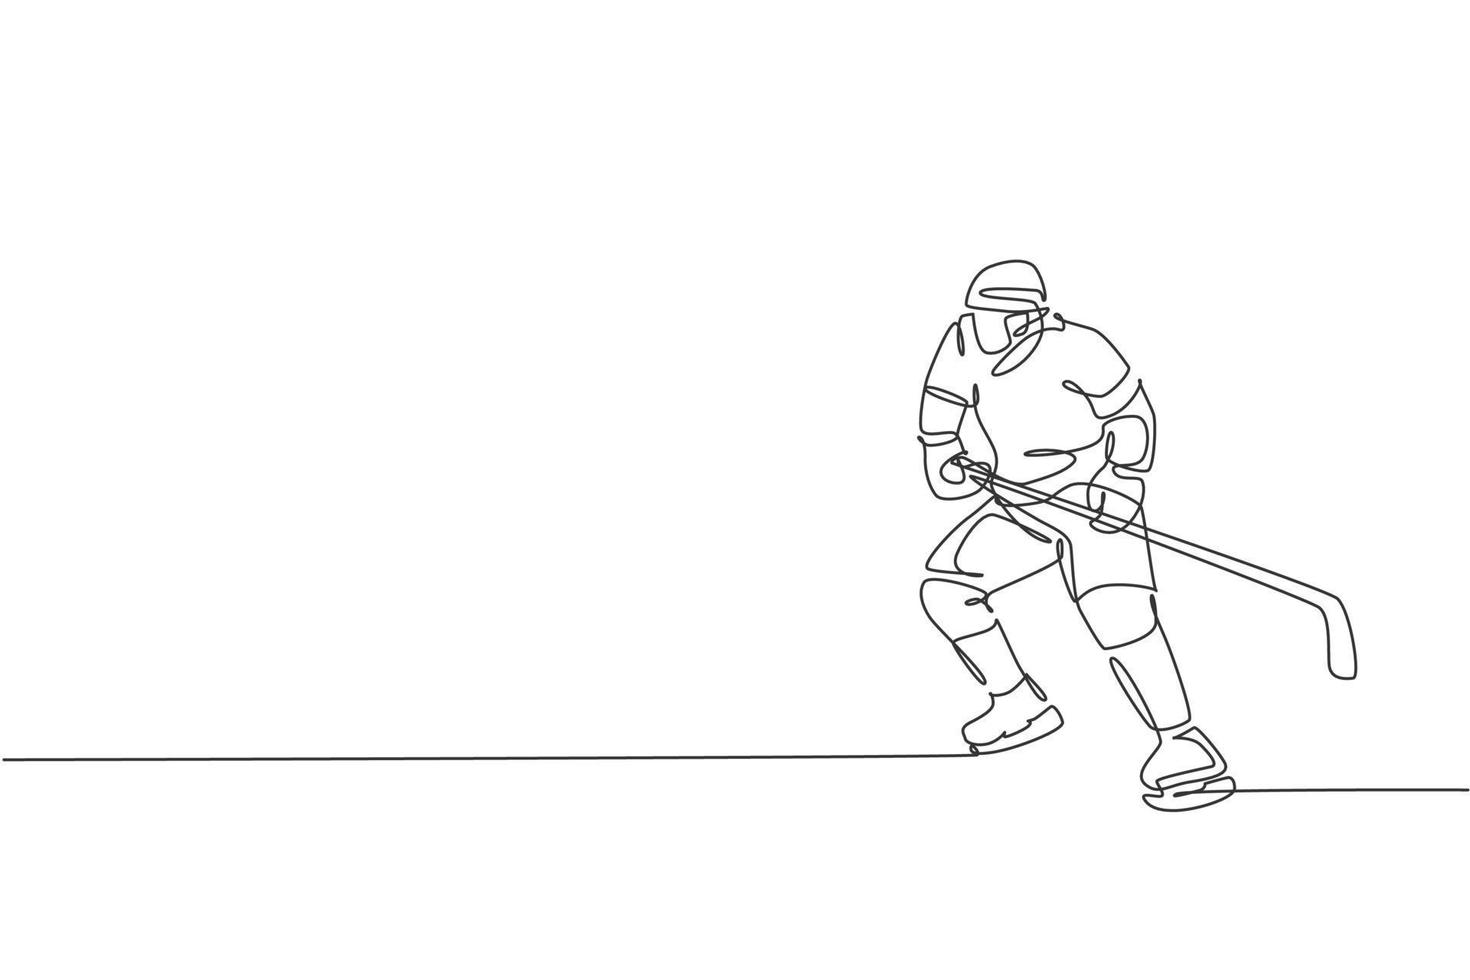 um desenho de linha contínua de um jovem jogador profissional de hóquei no gelo exercitando e praticando no estádio de pista de gelo. conceito de esporte radical saudável. ilustração em vetor design de desenho de linha única dinâmica